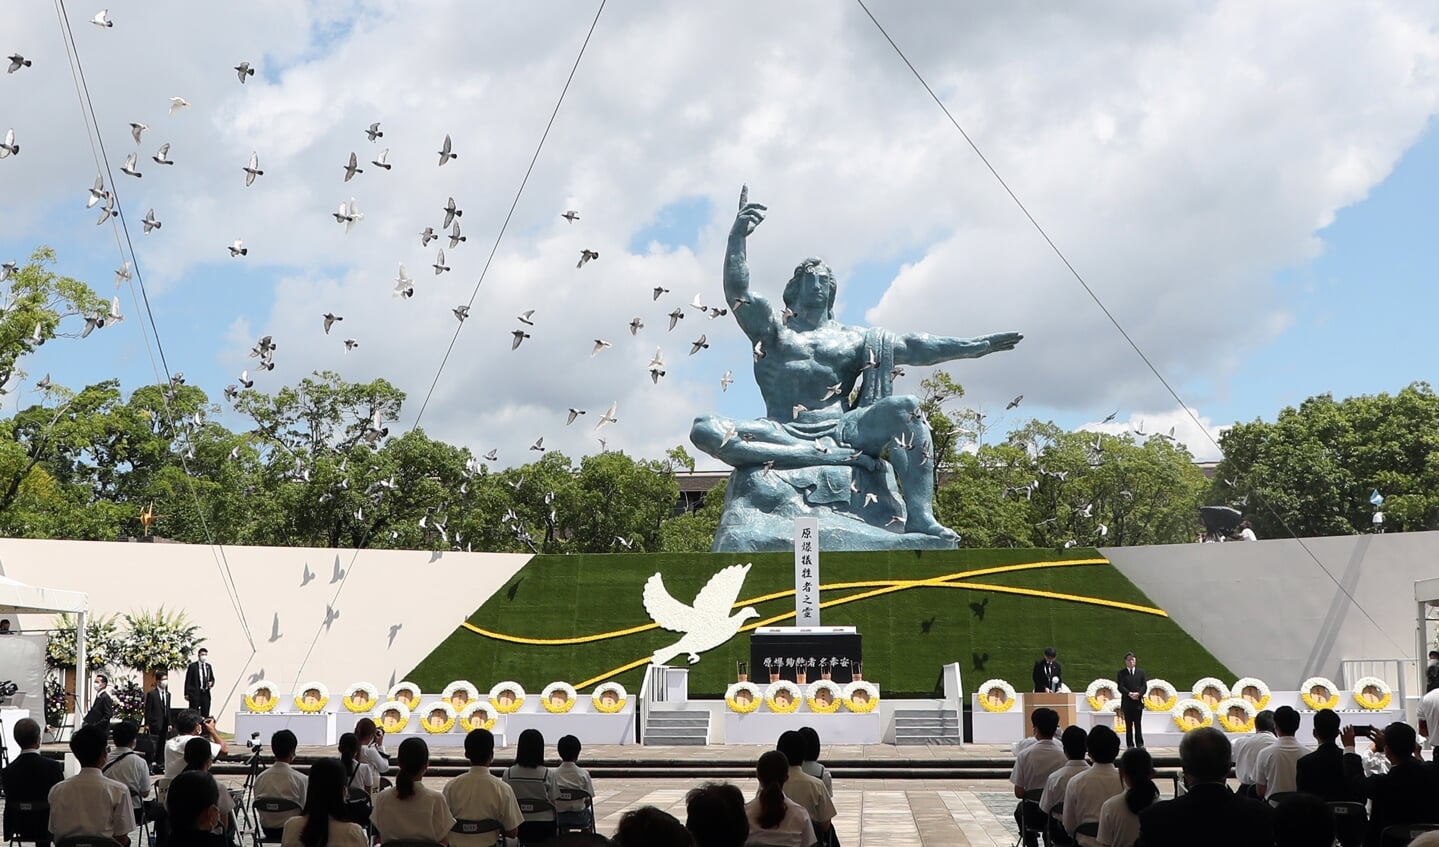 In het vredespark van Nagasaki werd op 9 augustus 2021 herdacht dat 76 jaar eerder een atoombom op de stad werd geworpen. Er kwamen naar schatting 74.000 mensen om het leven. Moderne kernwapens zijn nog veel dodelijker.